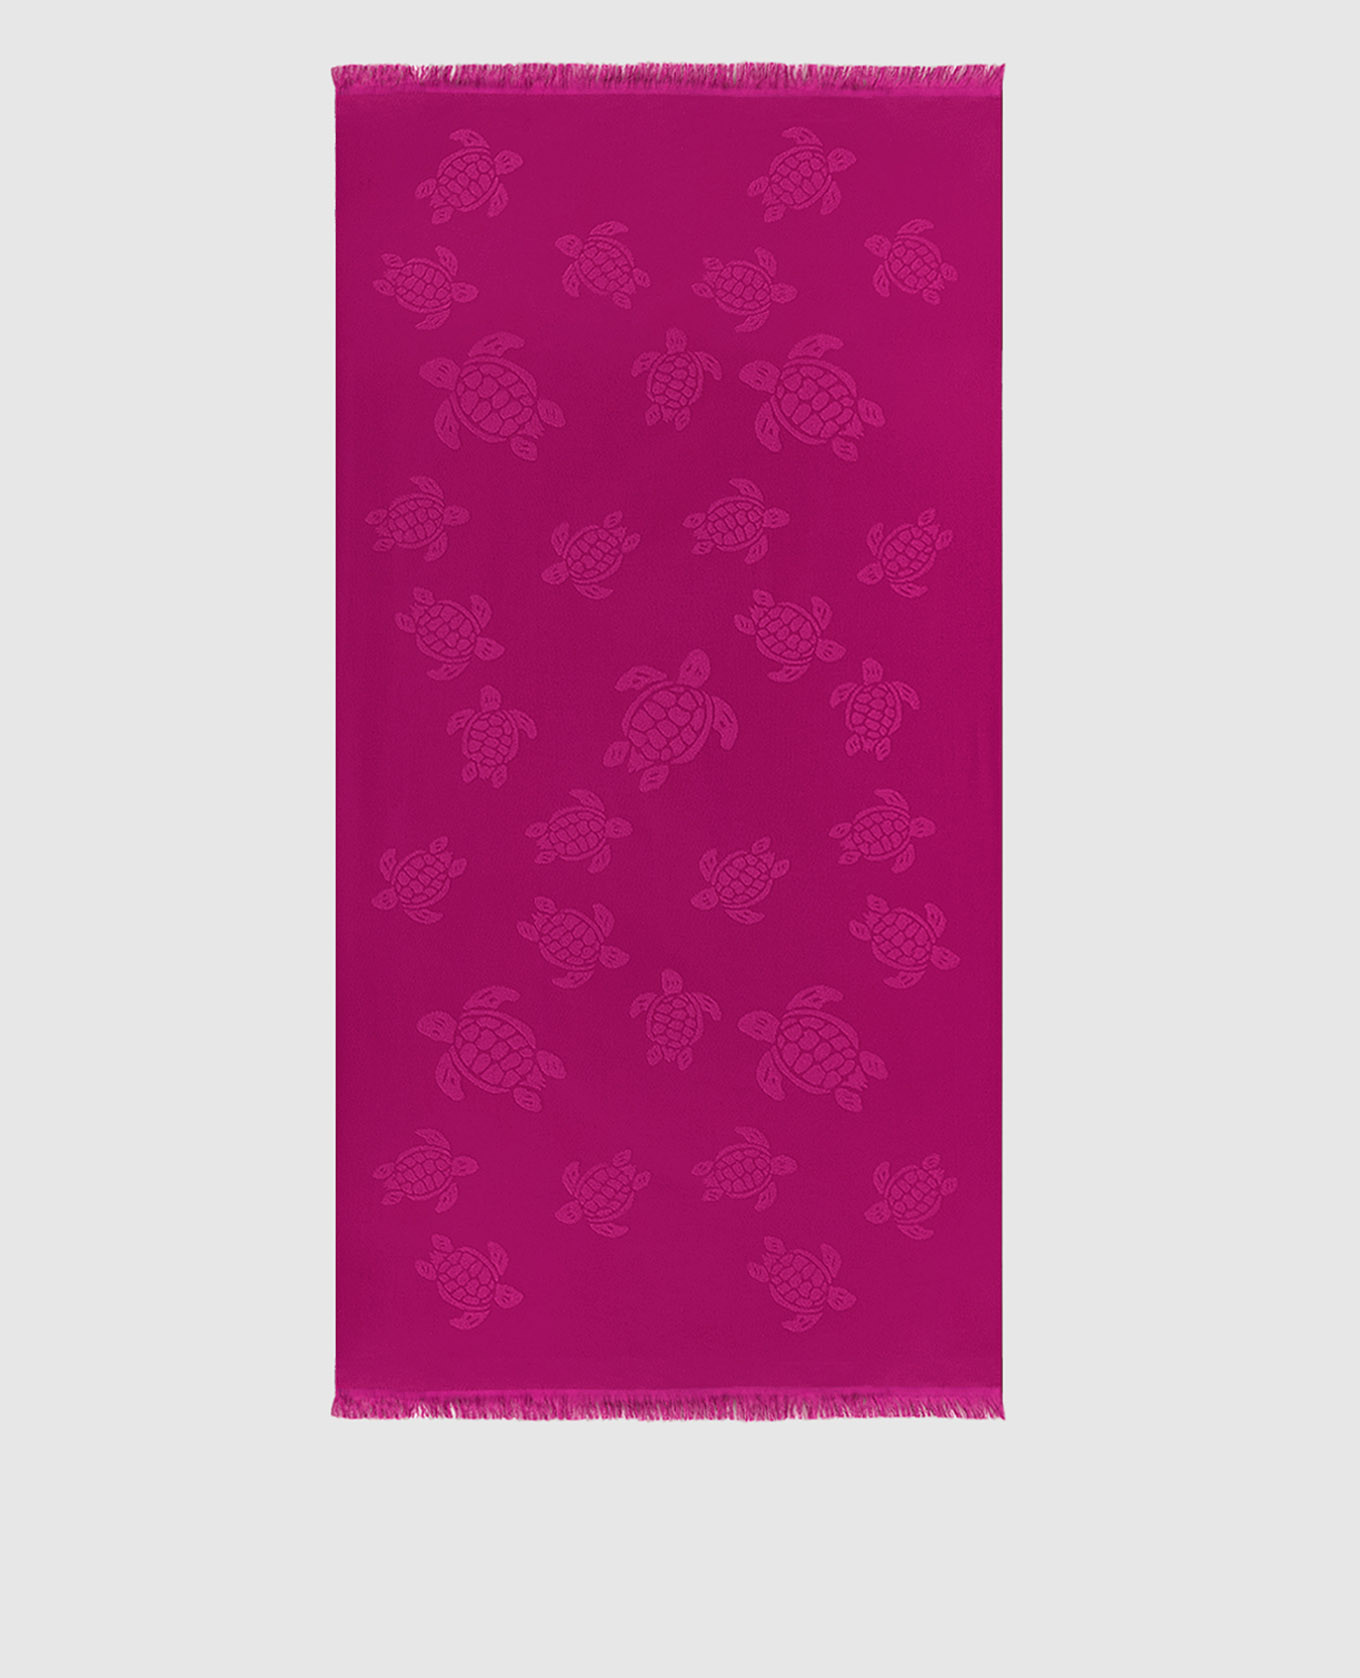 Pink Santah towel in a pattern